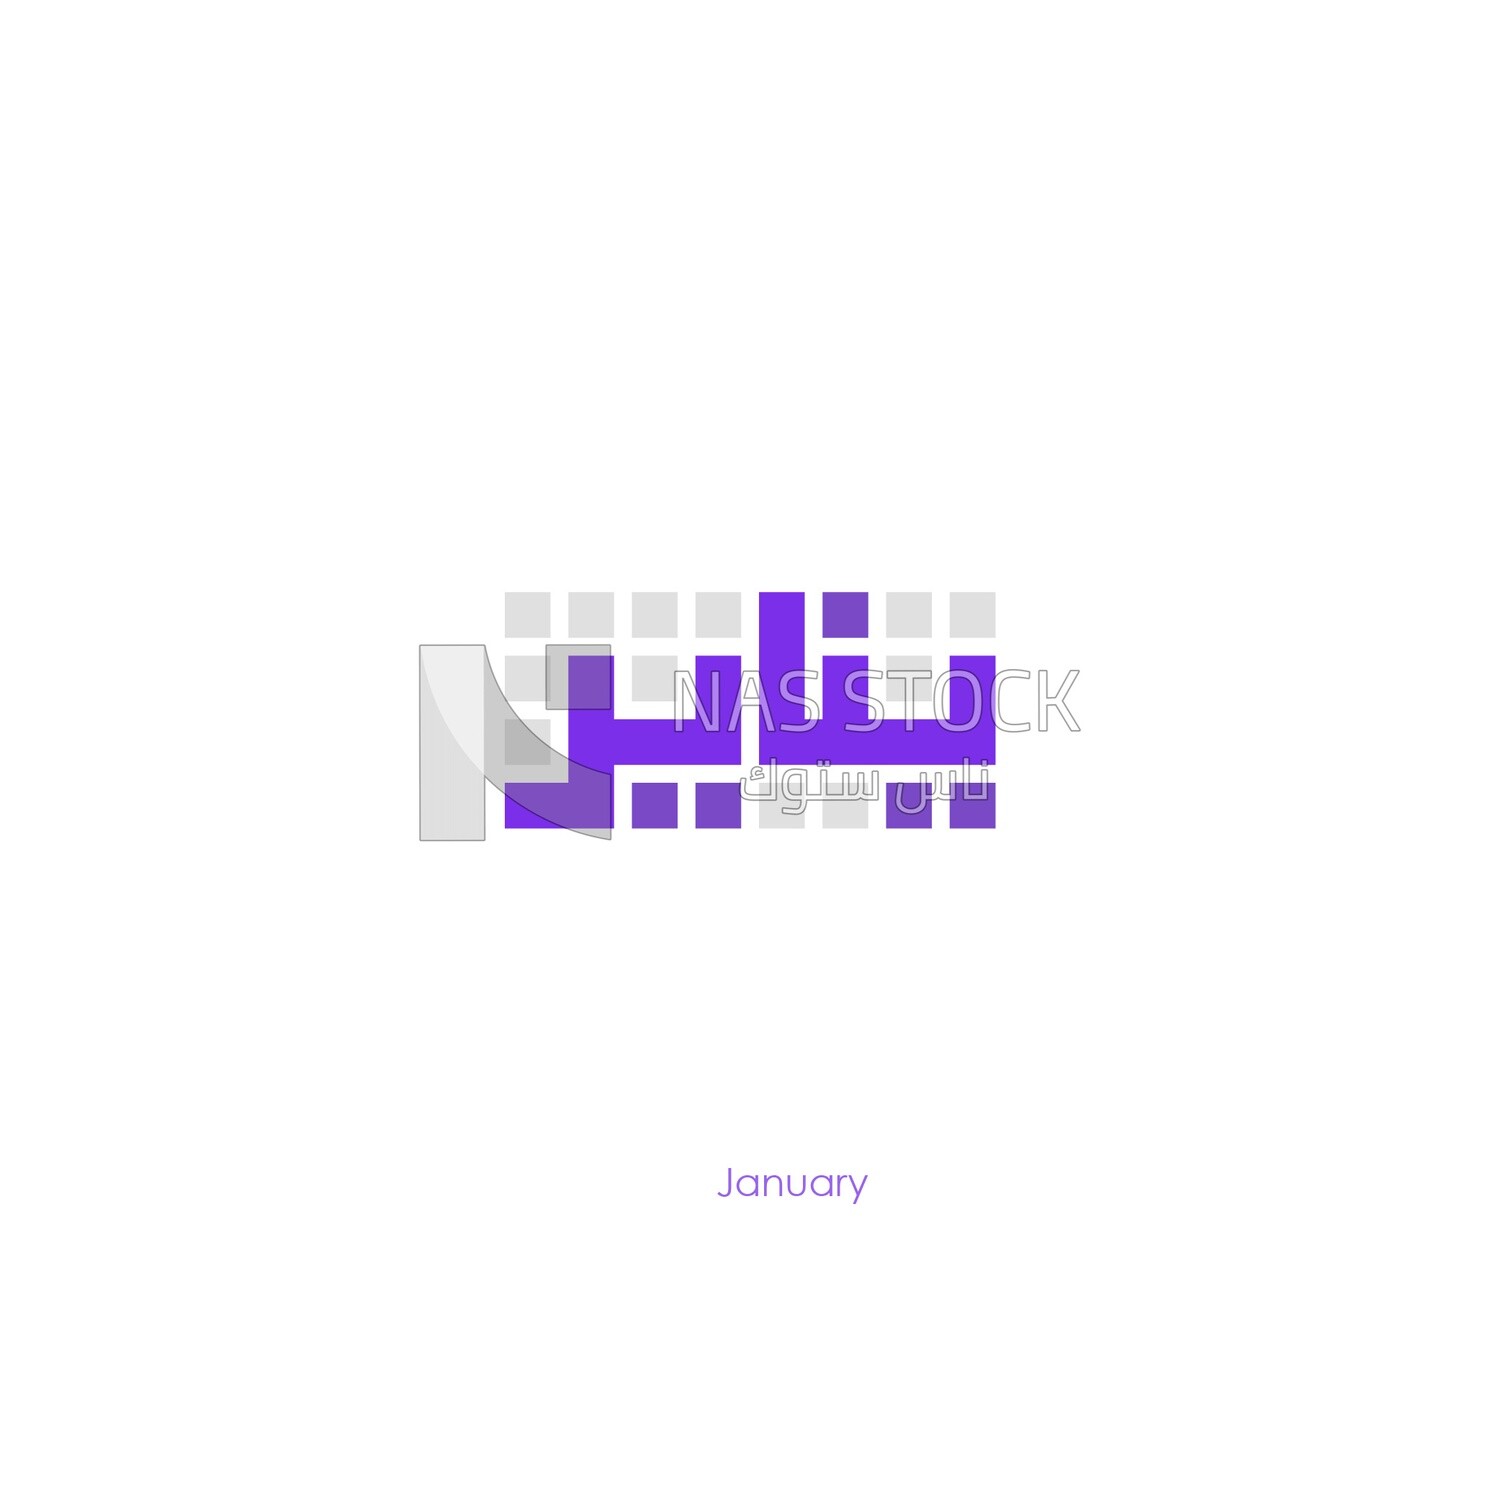 تصميم فيكتور , الخط العربي, الشهر الاول &quot;يناير&quot; بالخط الكوفي